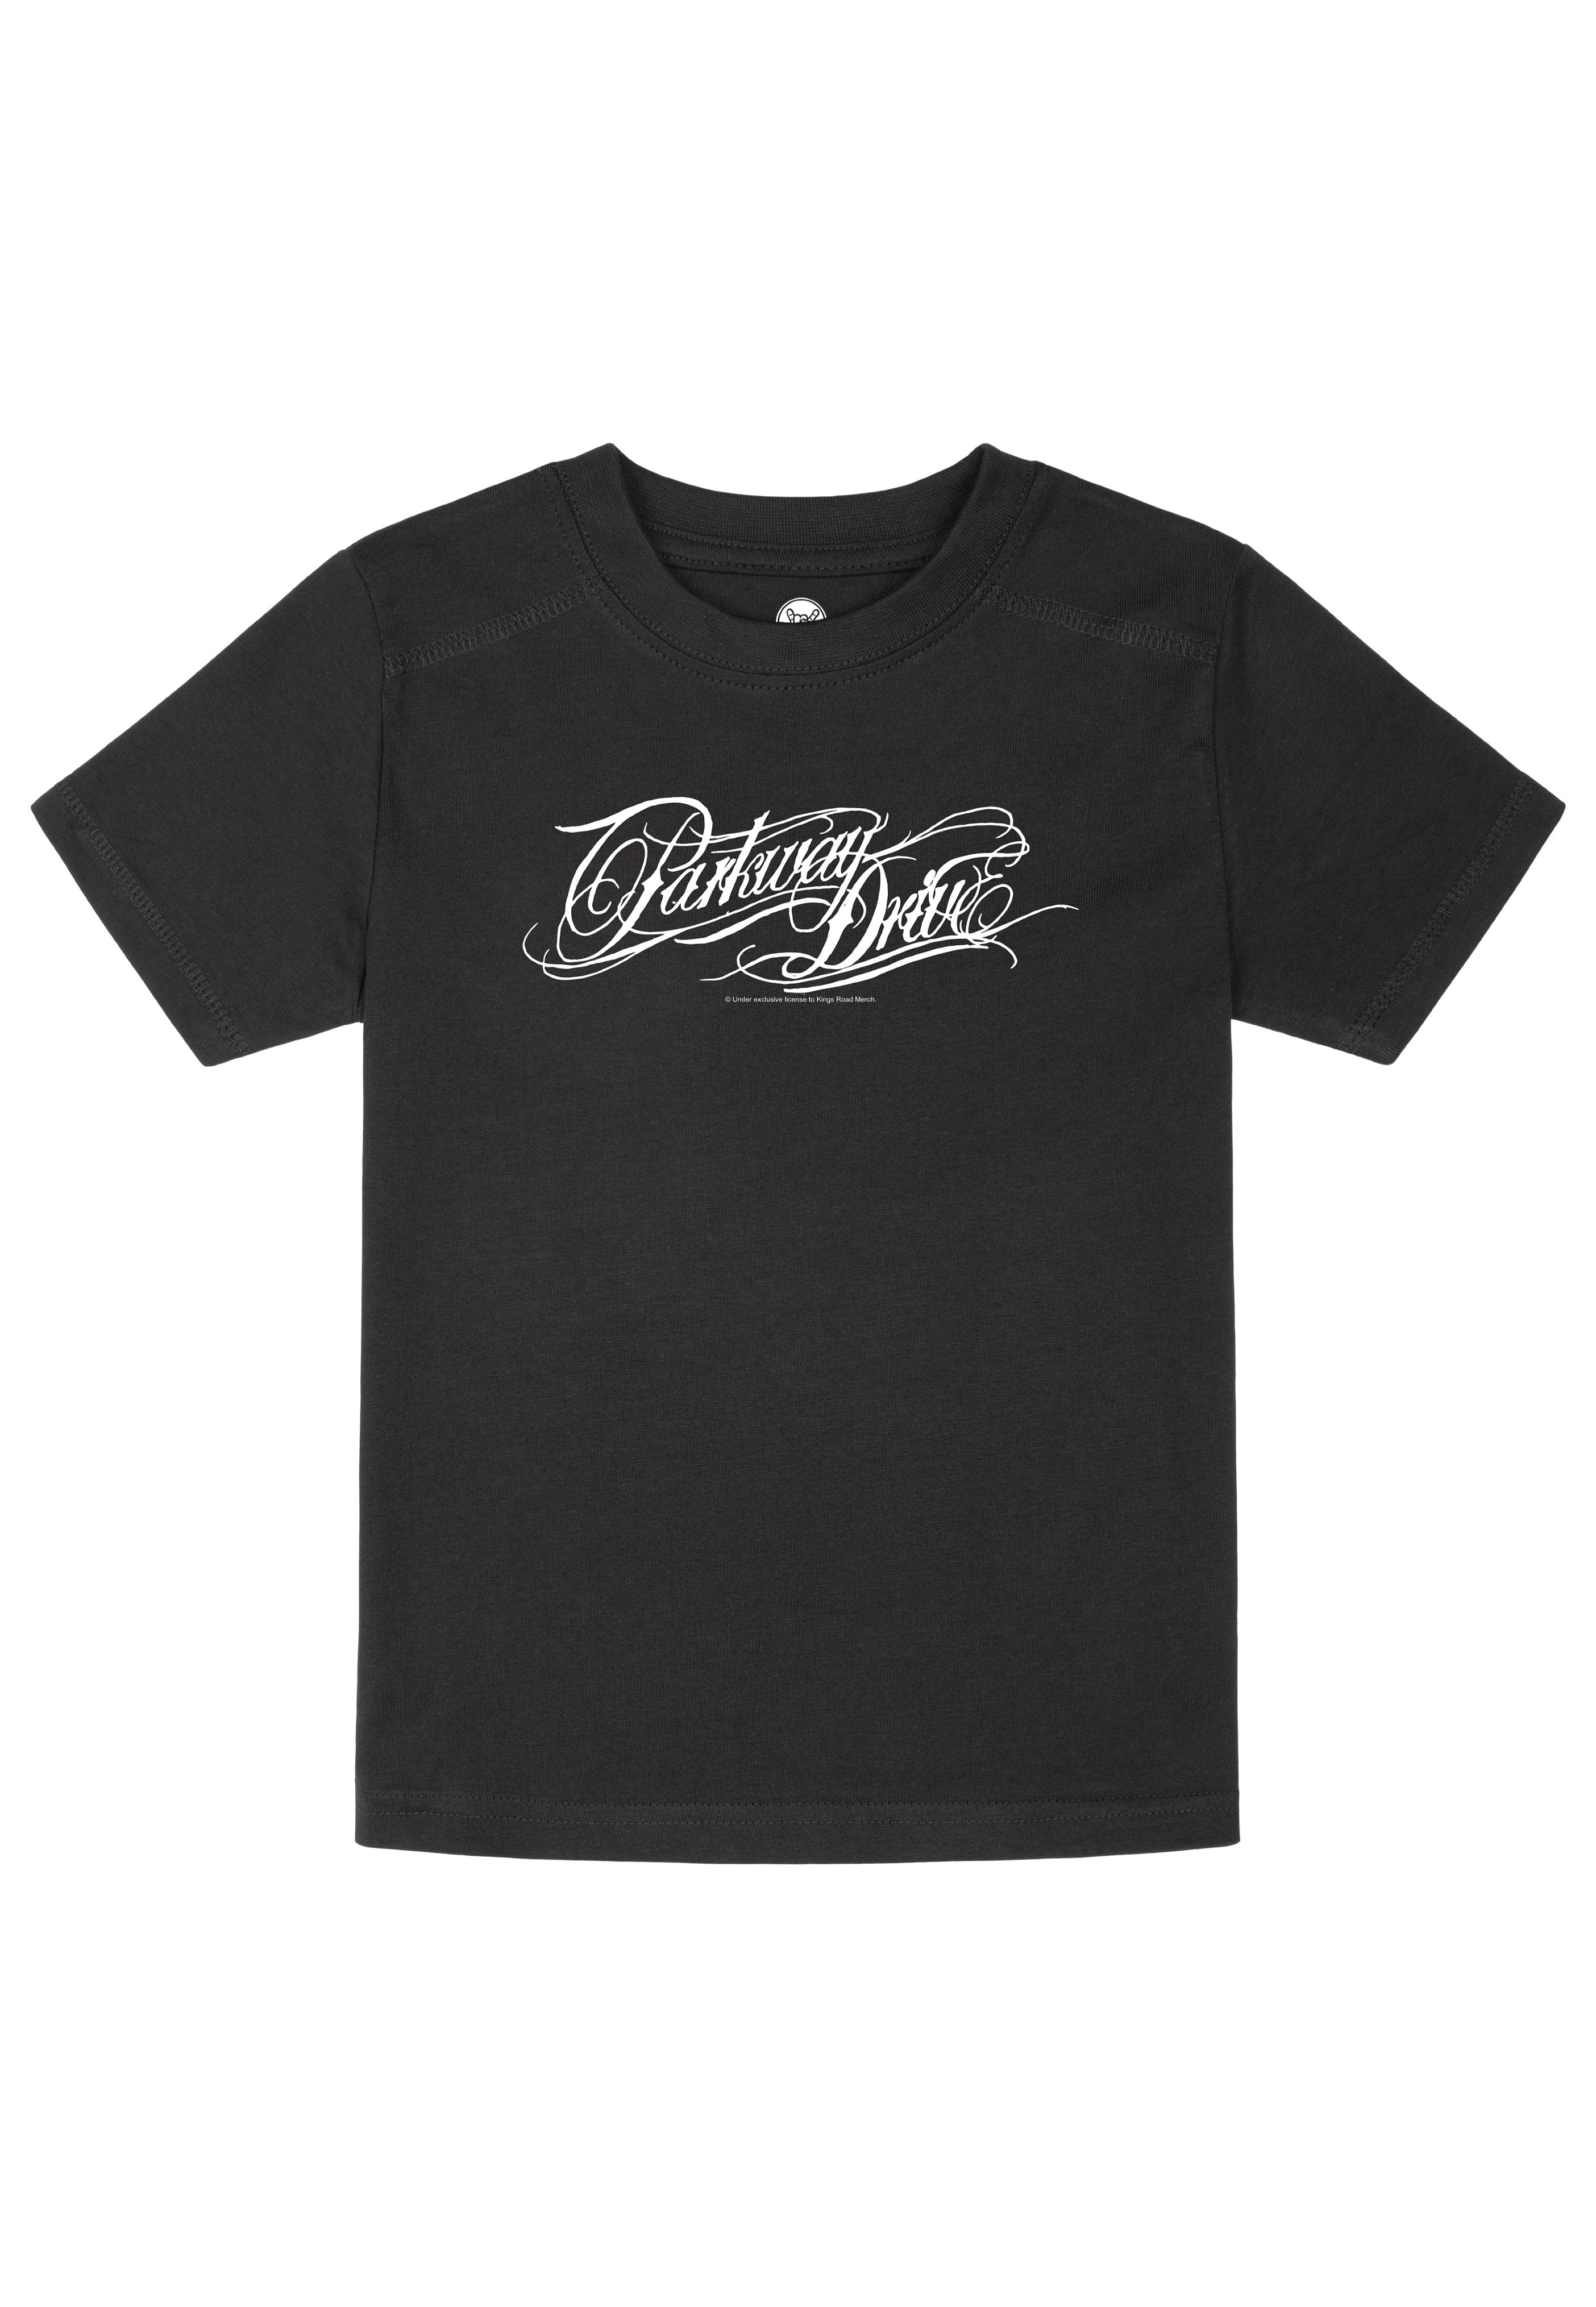 Parkway Drive - Logo Kids Black/White - T-Shirt